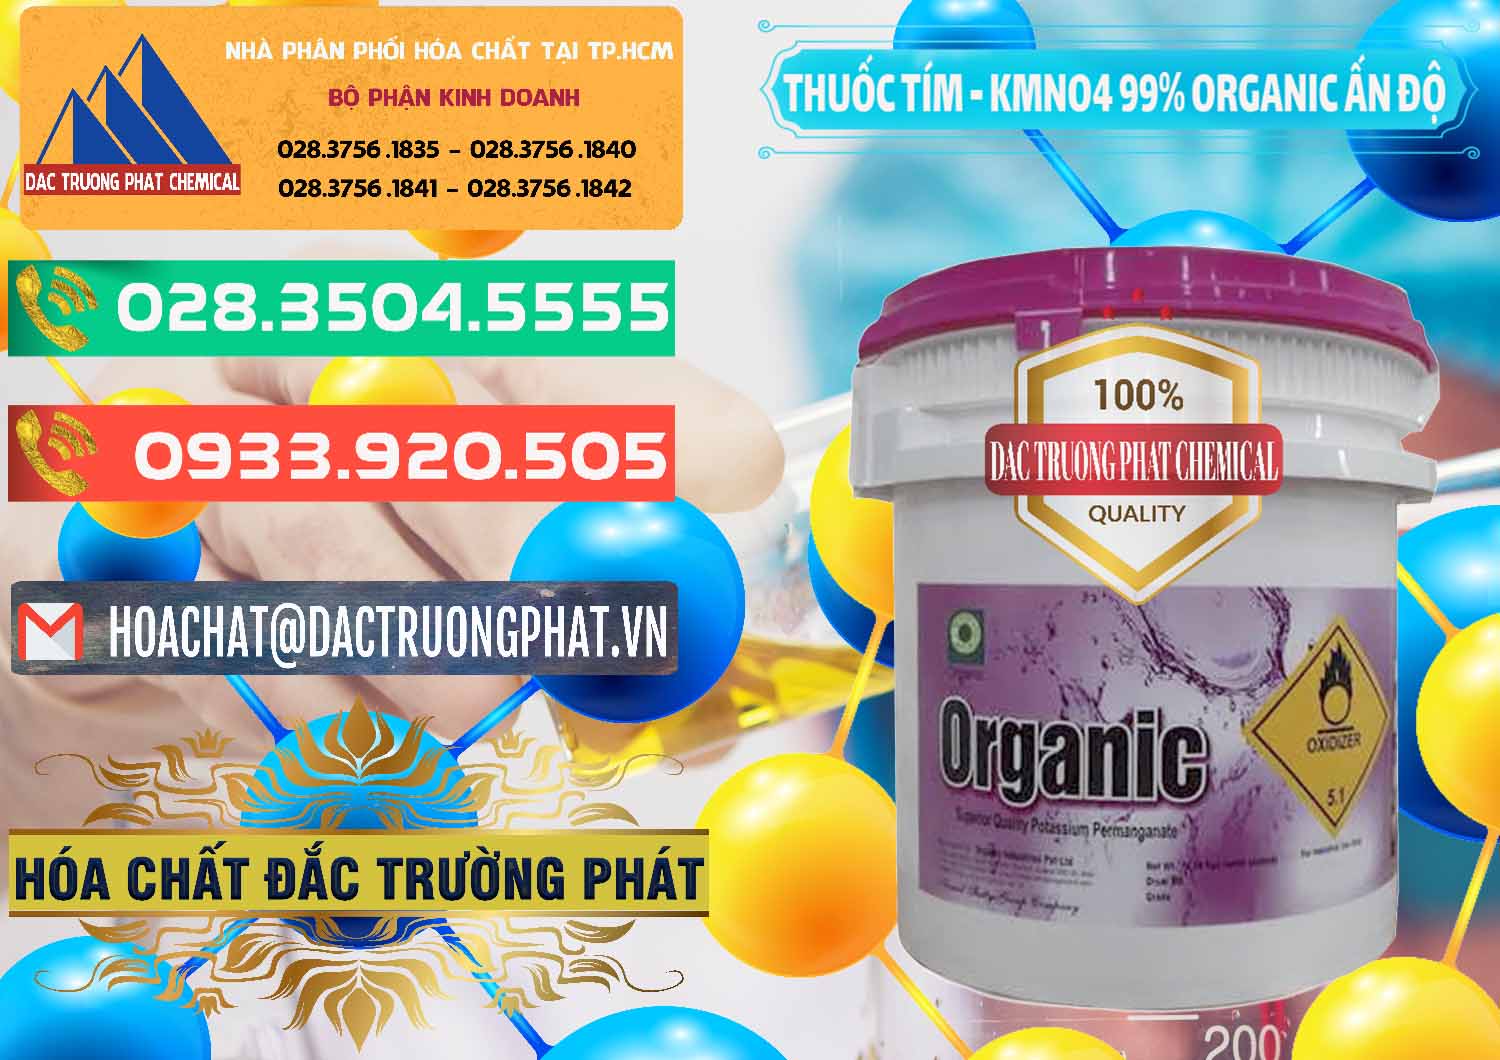 Cty chuyên kinh doanh & bán Thuốc Tím - KMNO4 99% Organic Ấn Độ India - 0216 - Công ty cung cấp & bán hóa chất tại TP.HCM - congtyhoachat.com.vn